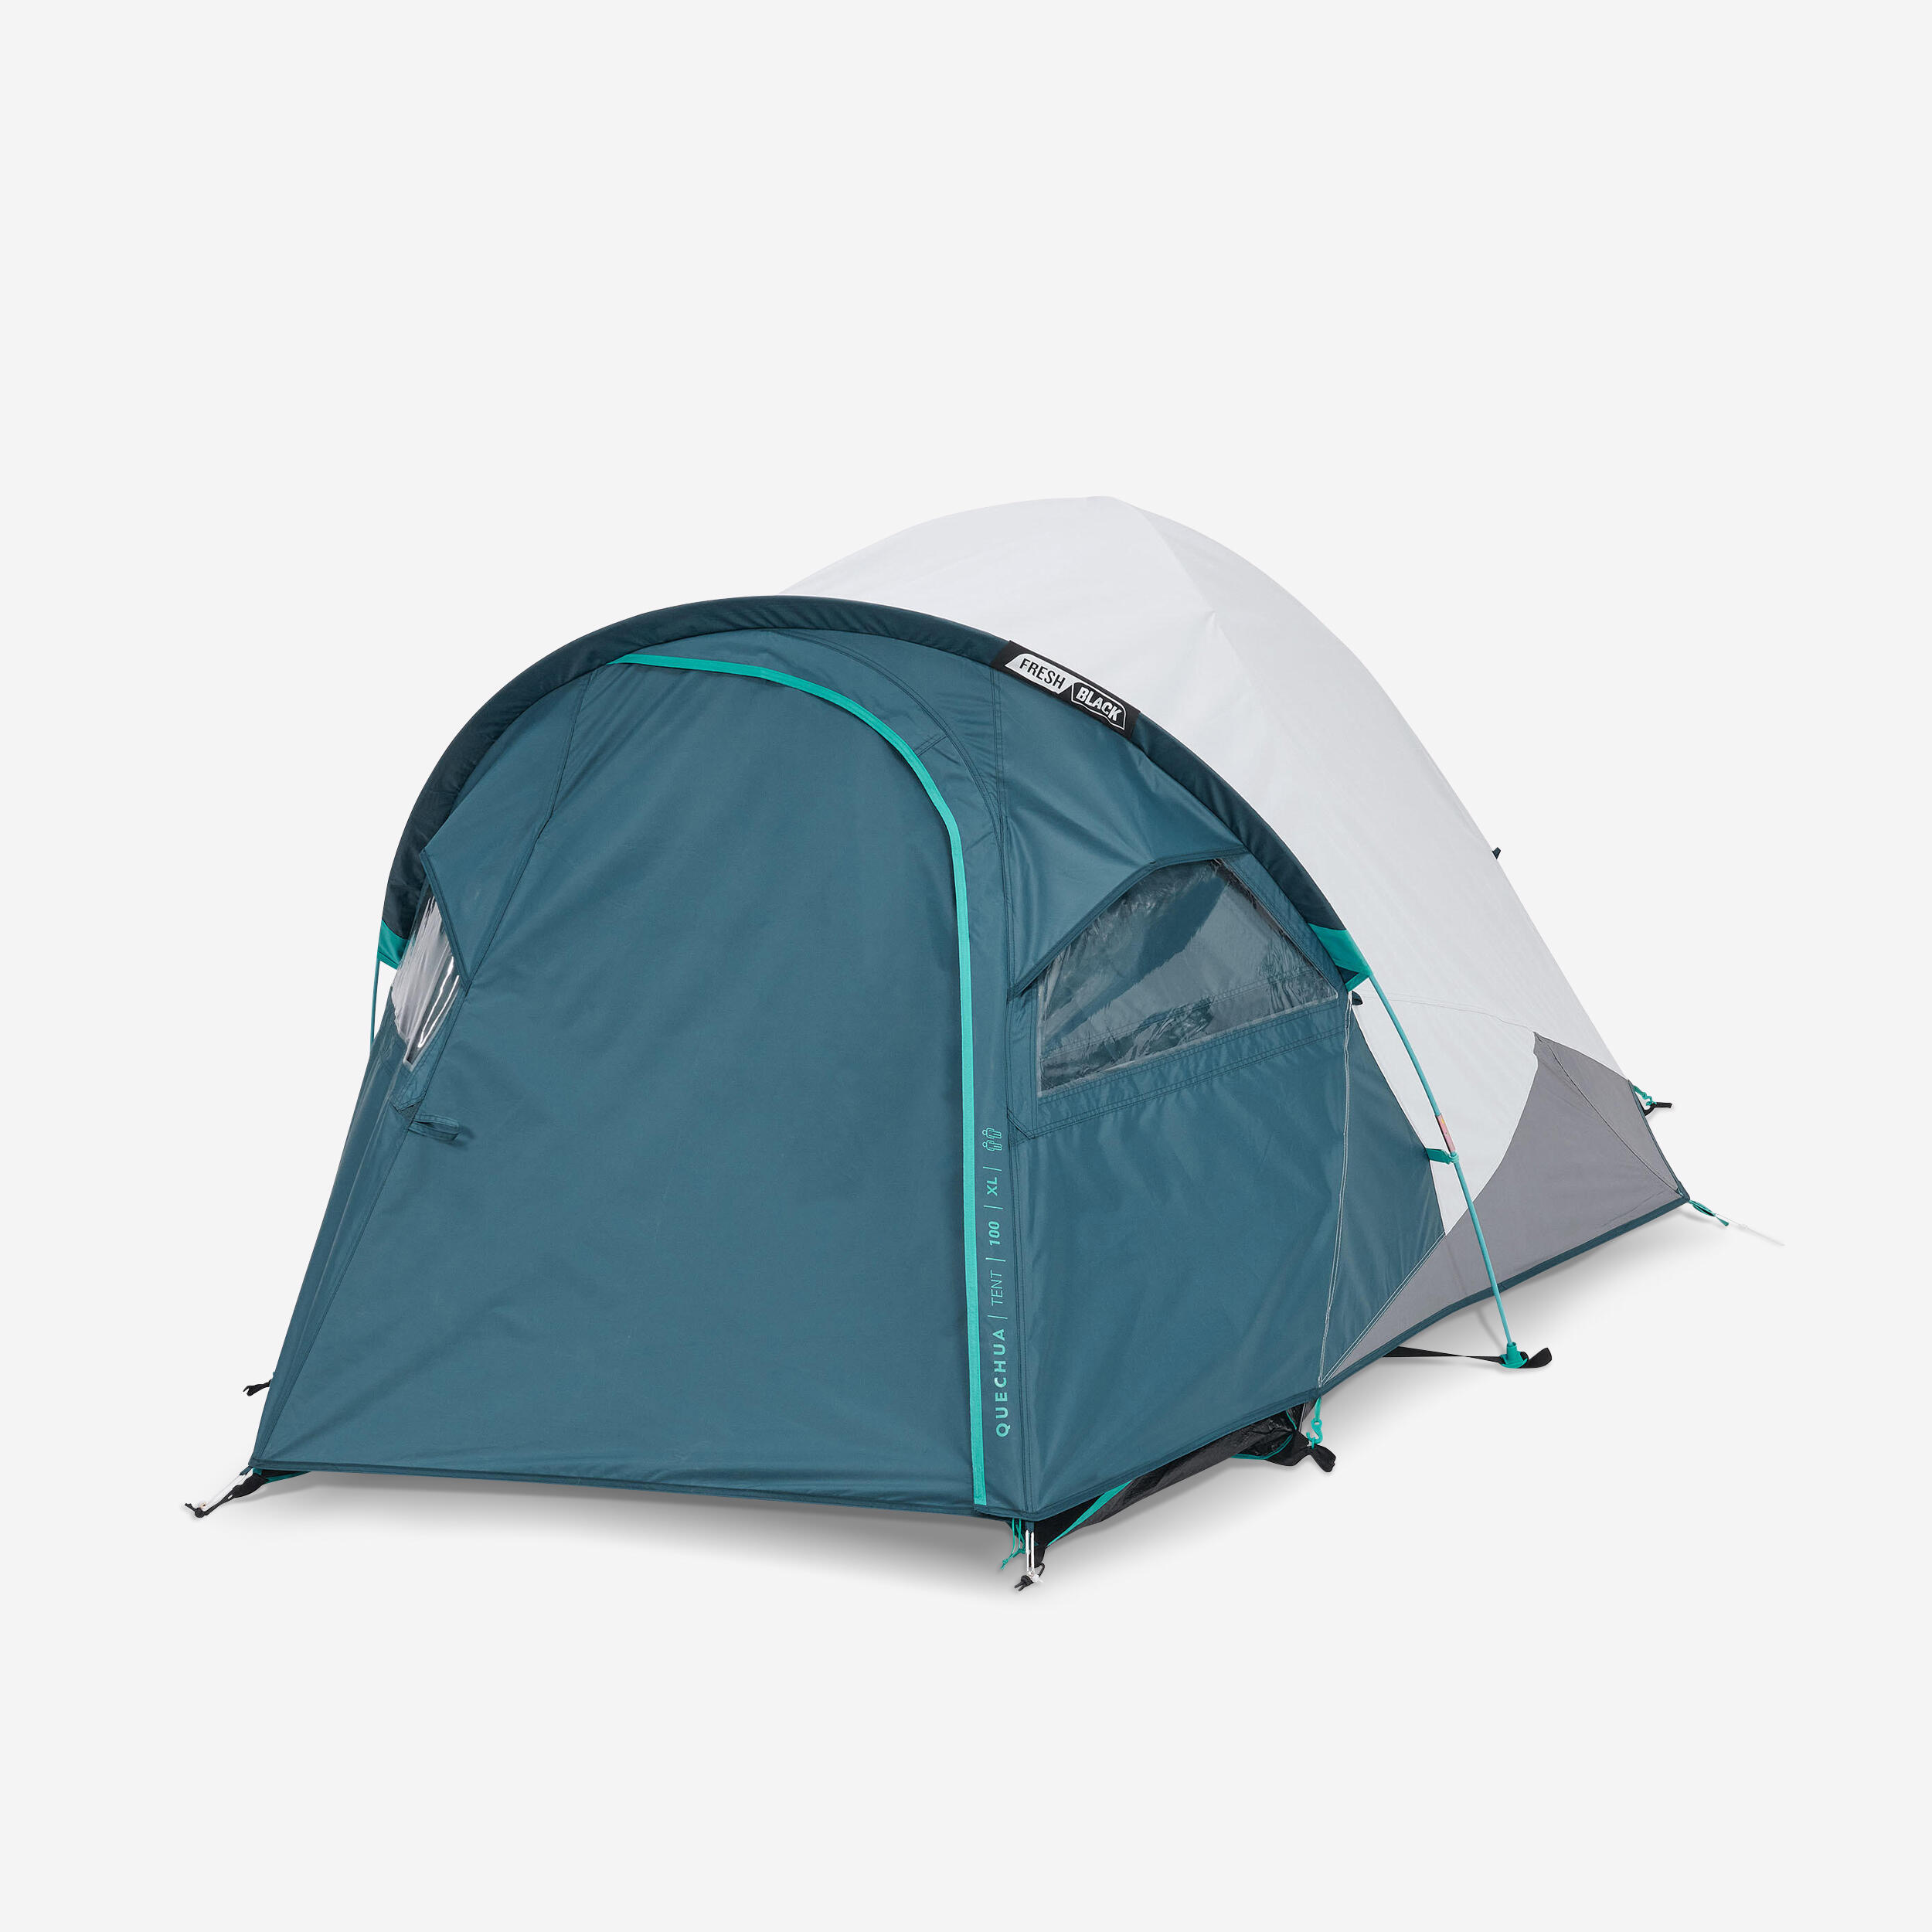 Camping tent MH100 XL - 2-P - Fresh&Black 1/19